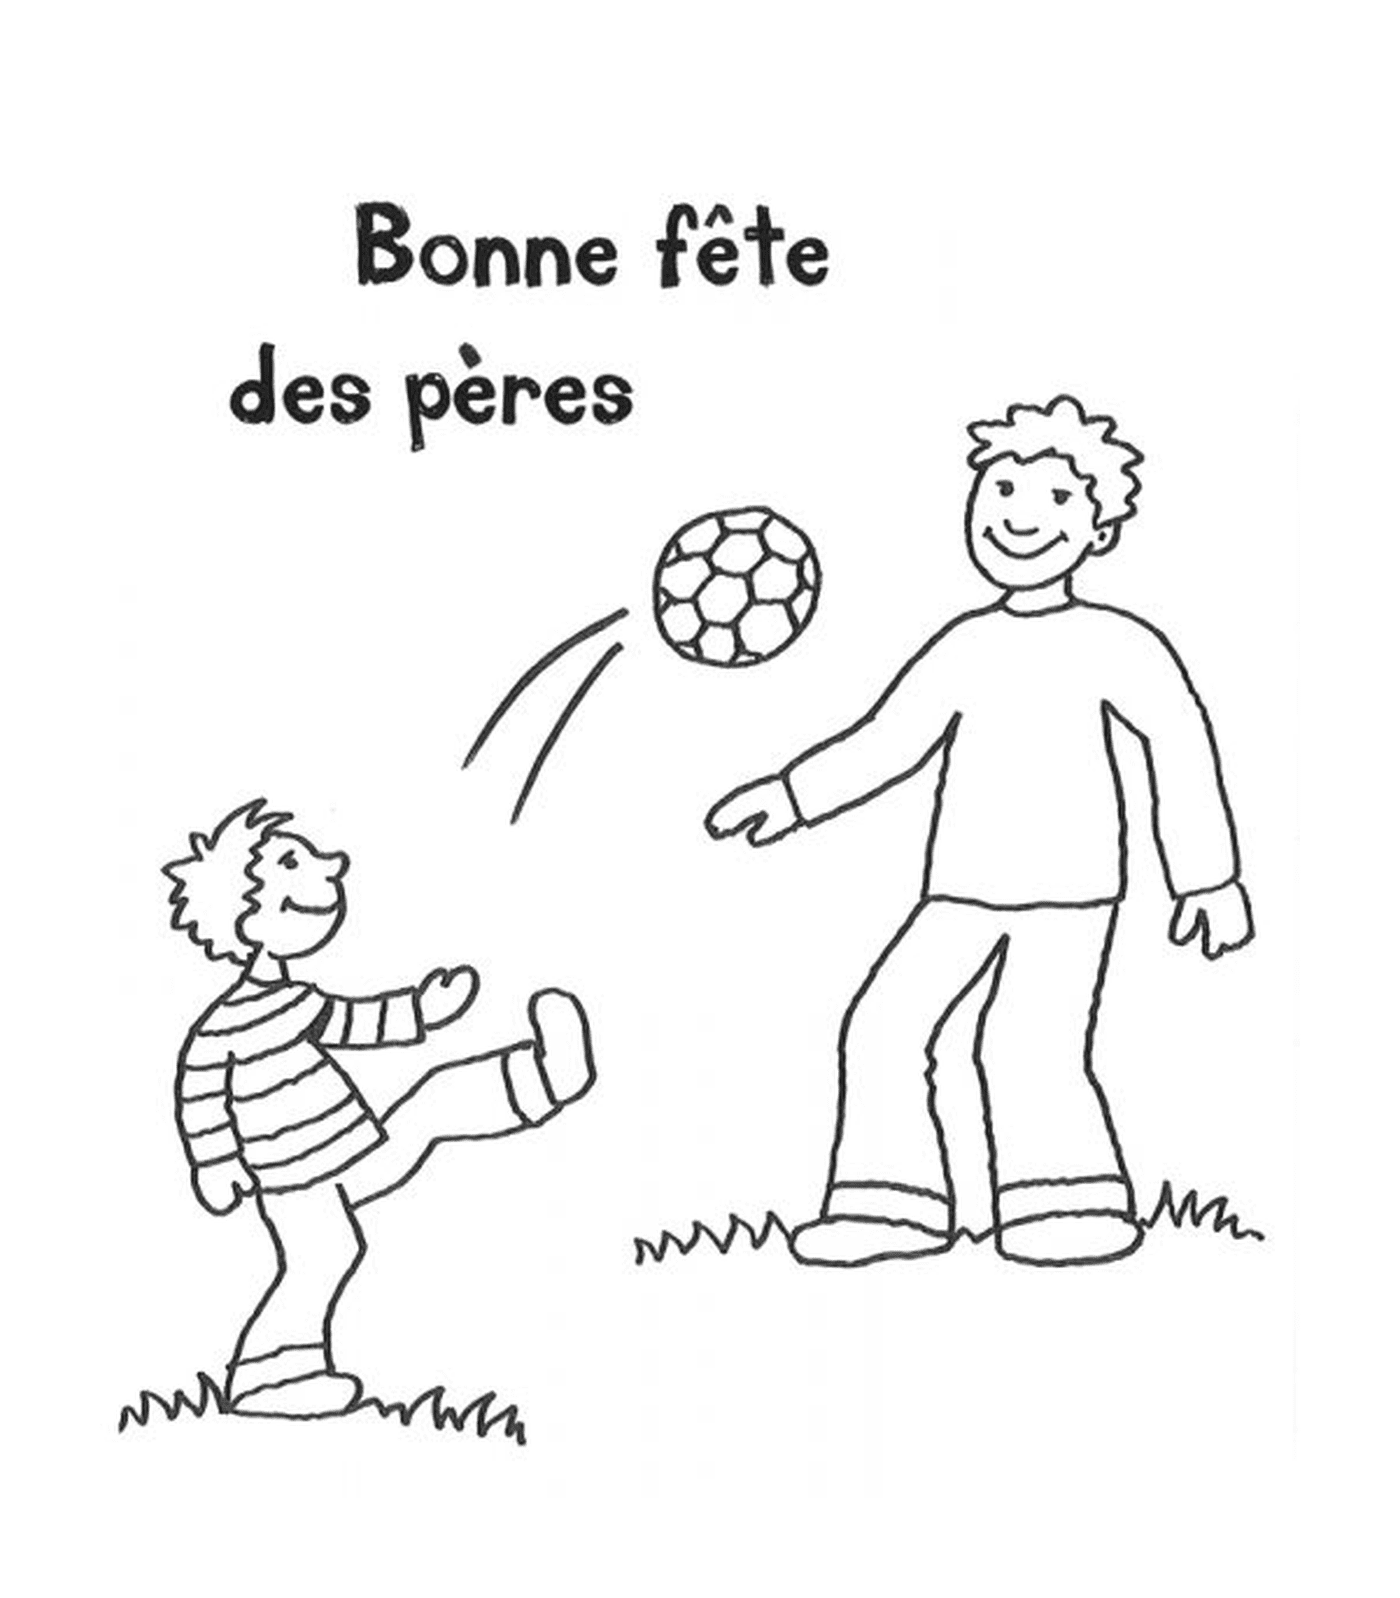   Un homme et un garçon jouent avec un ballon 